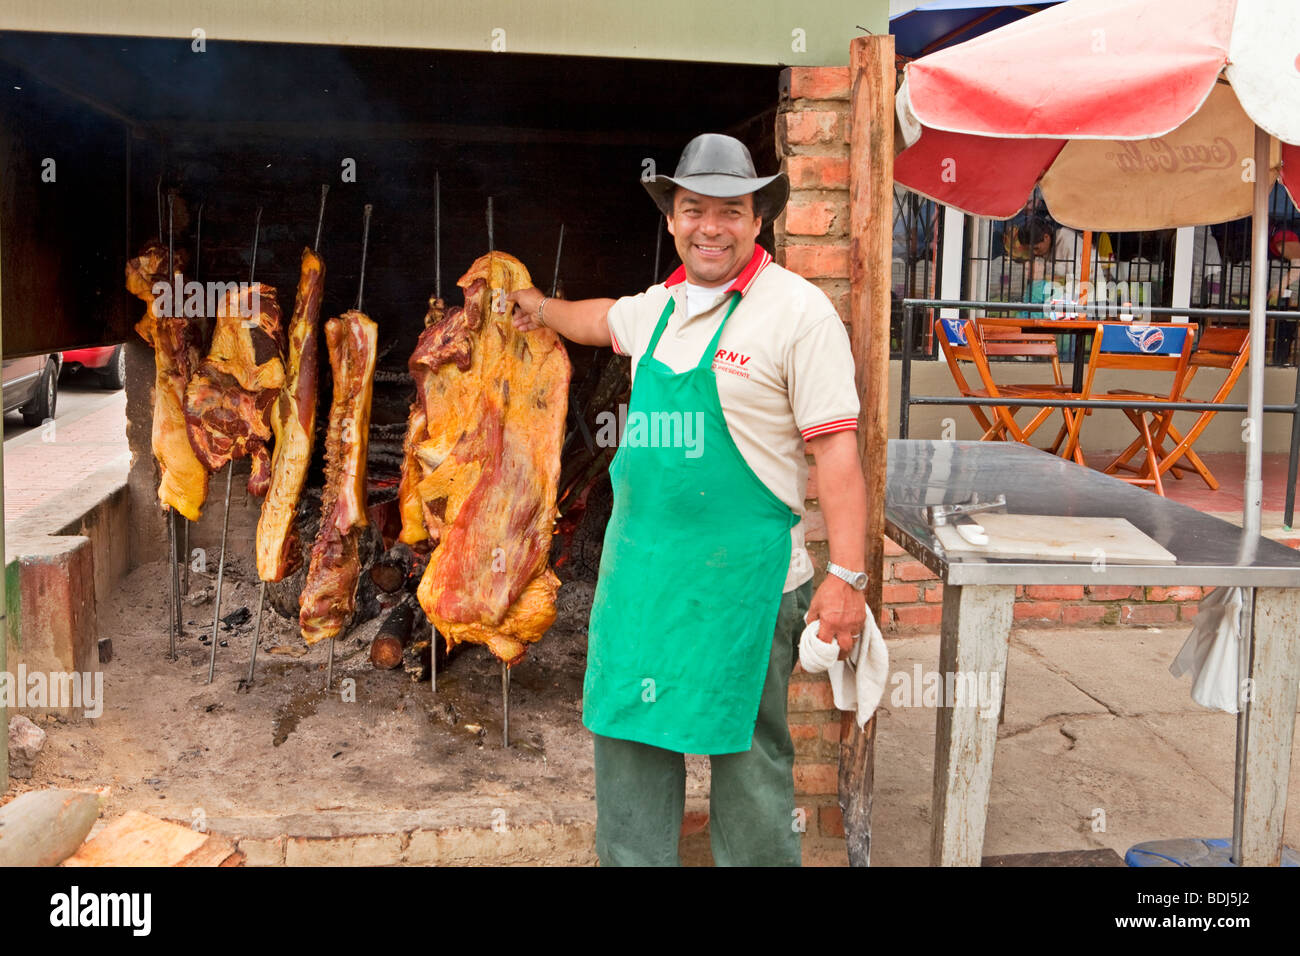 Carne azadas, restaurante colombiano, cerca de Bogotá, Colombia Foto de stock